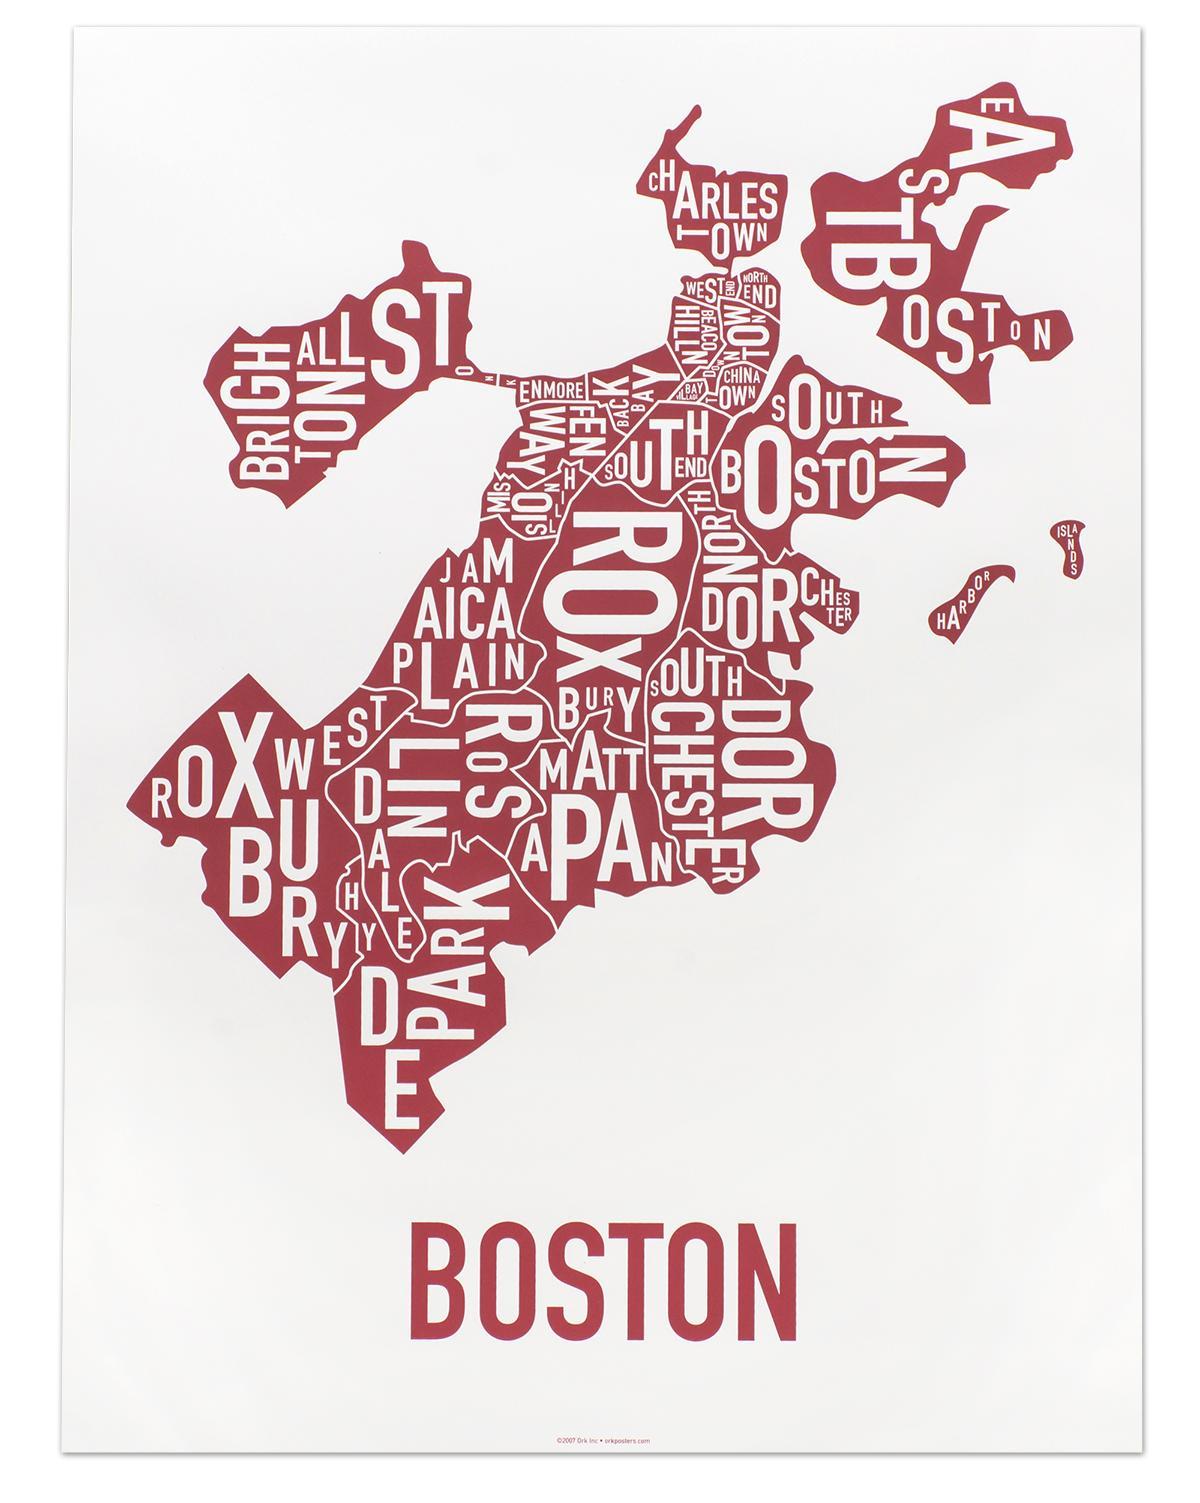 grad Boston karti